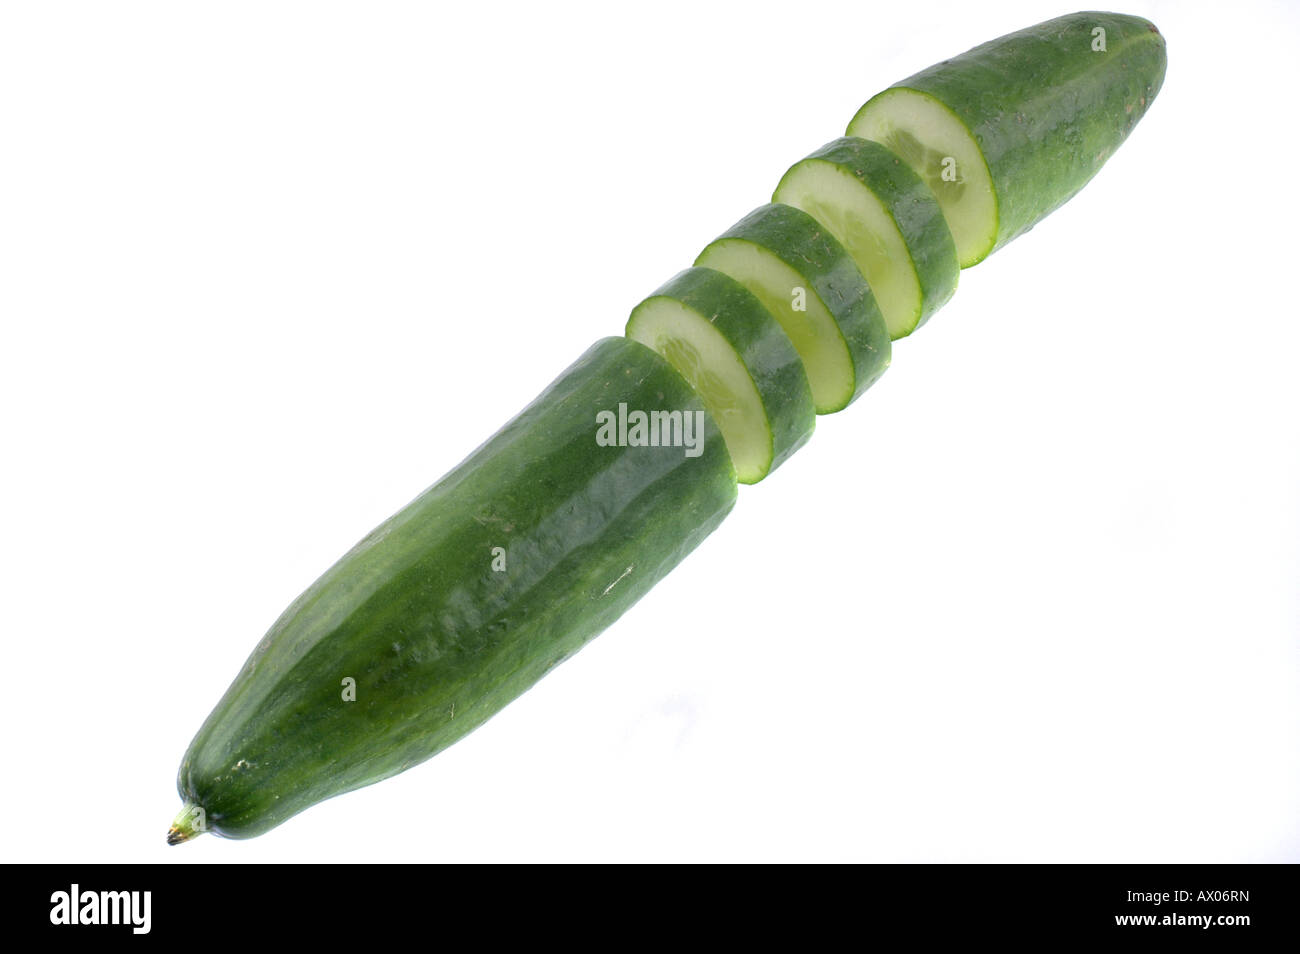 Green cucumber without shadow on white background / Grüne Gurke ohneSchatten vor Weißem Hintergrund Stock Photo